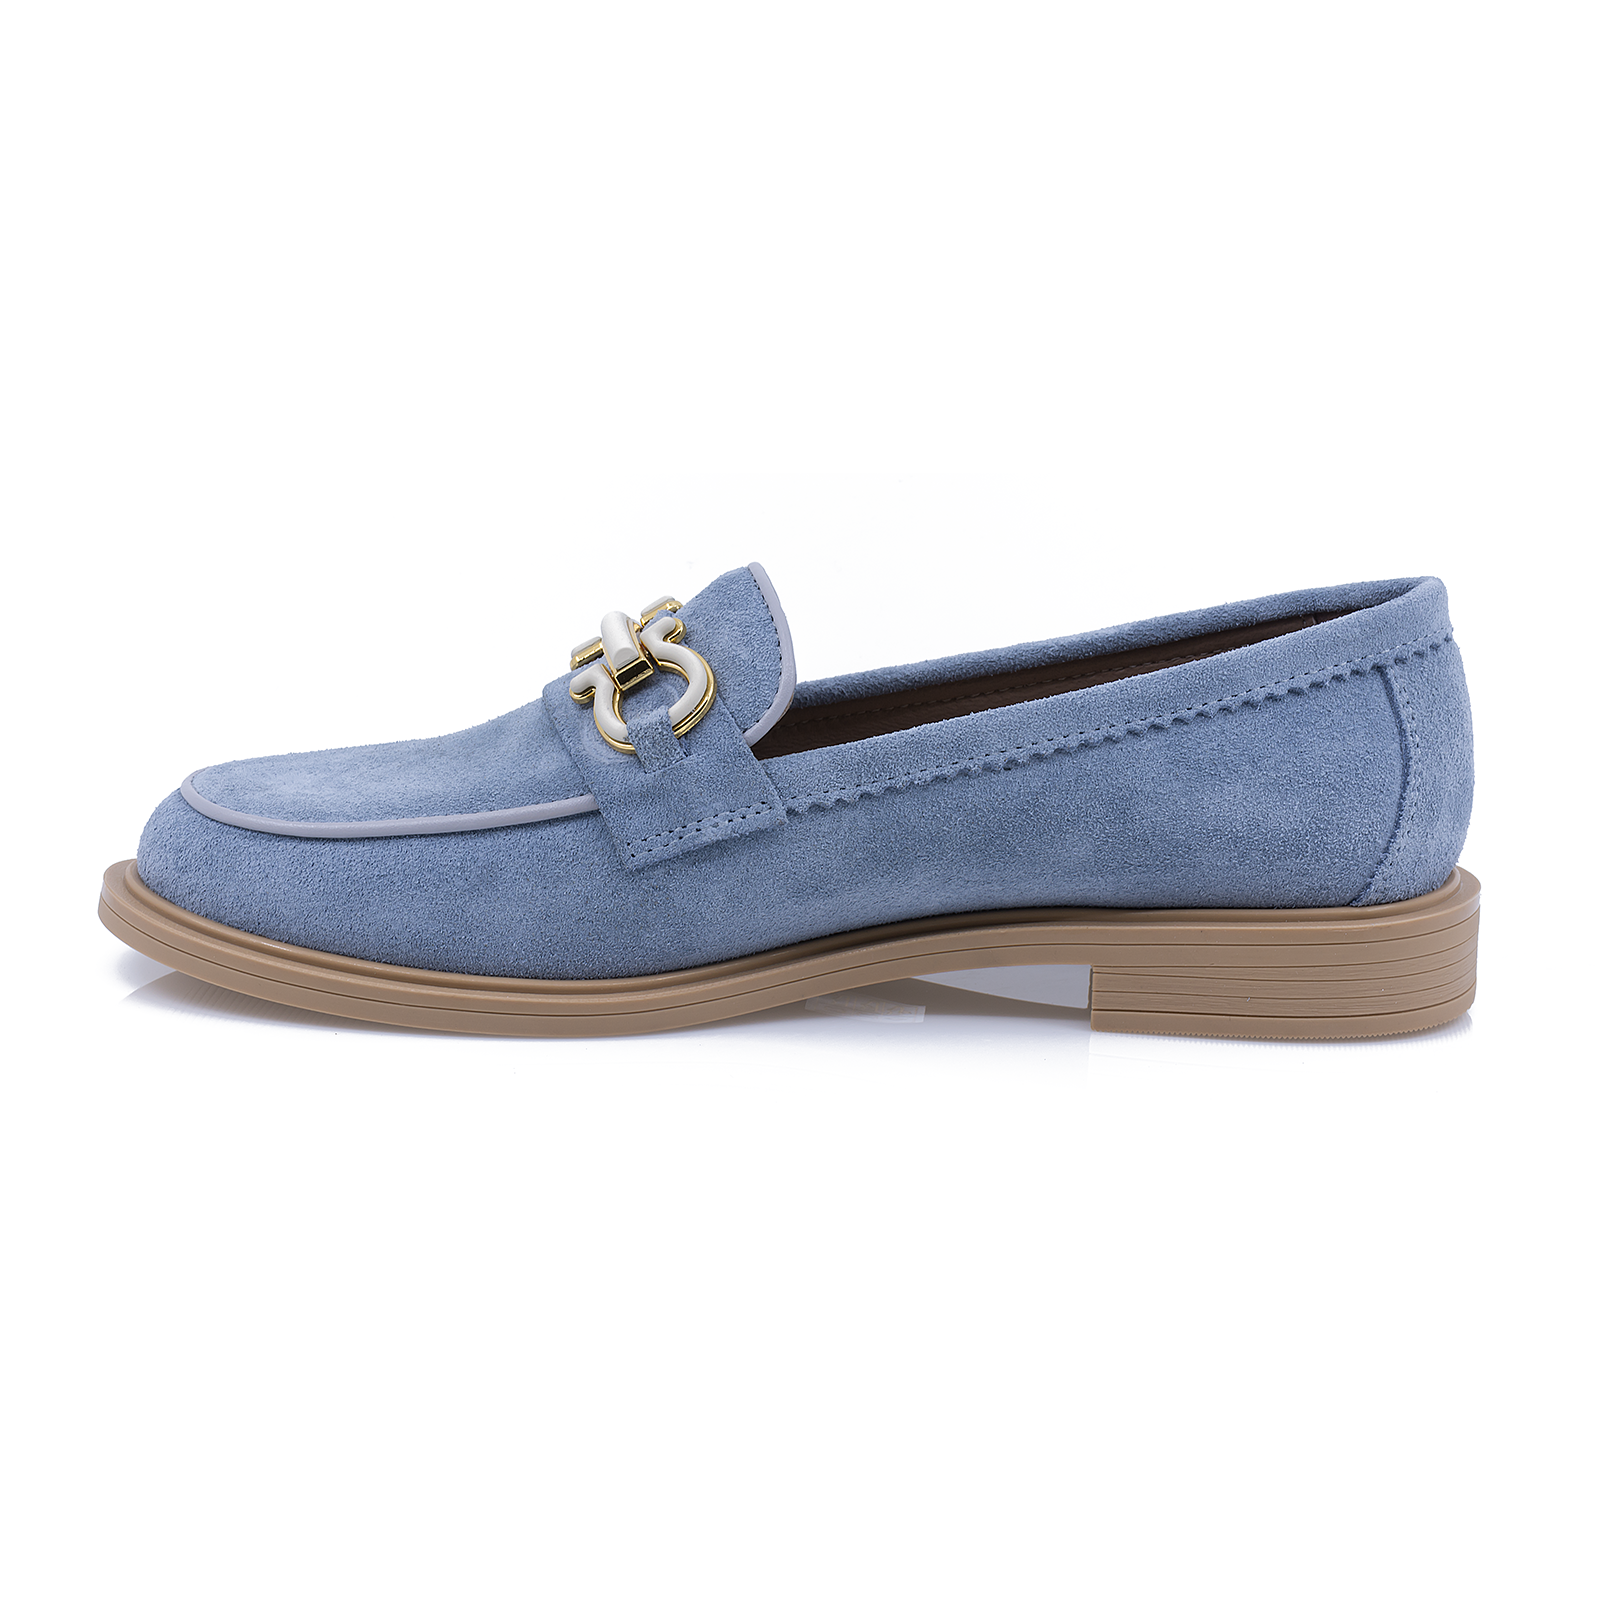 Pantofi-dama-Caspian-Cas-6007-casual-piele-intoarsa-albastru-nouamoda.ro-2